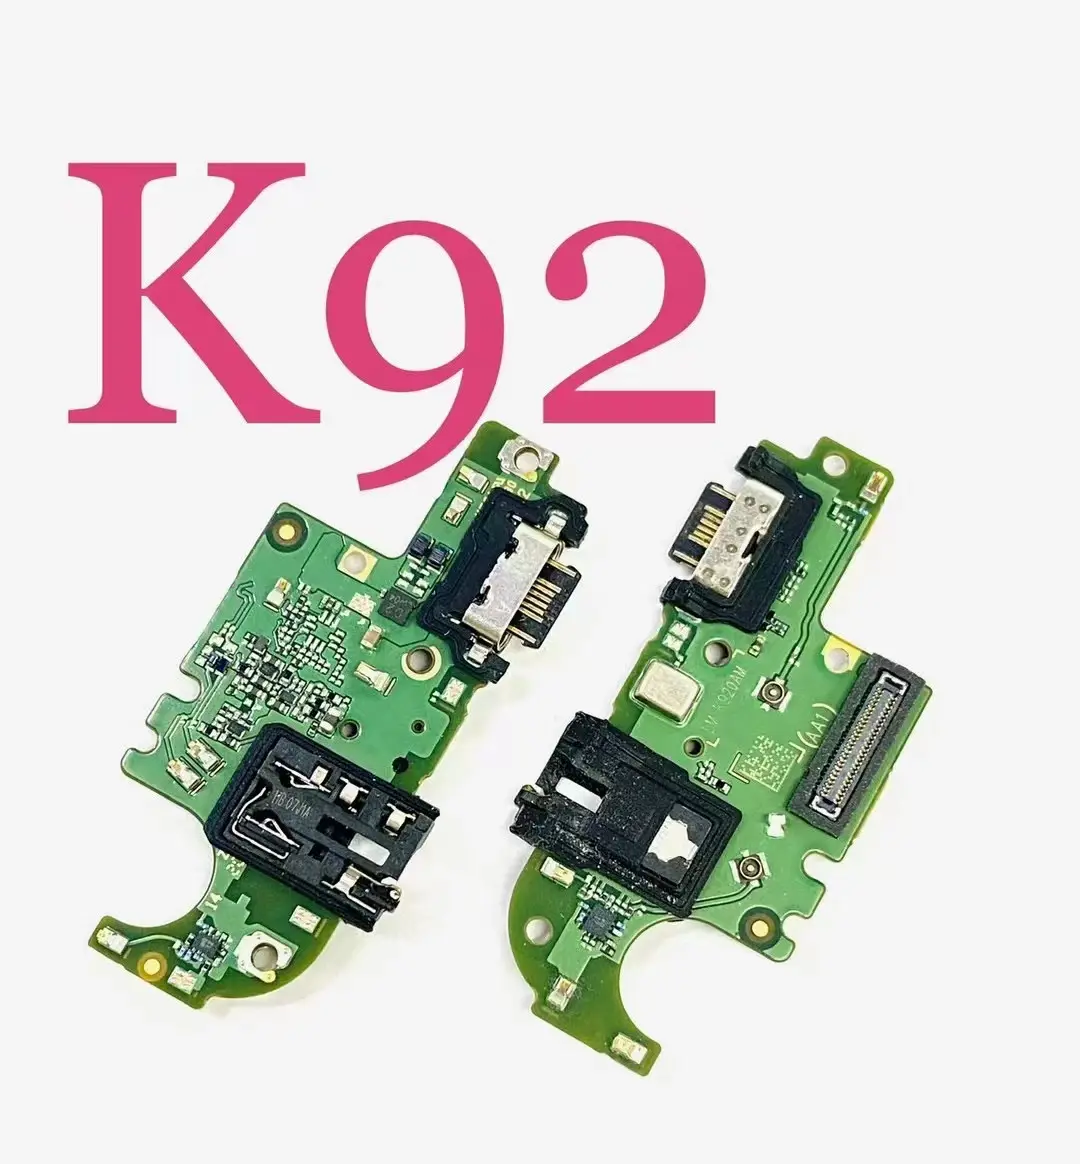 Şarj portu flex LG için yedek parça K51s K92 şarj portu flex toptan cep telefonu tamir parçaları özelleştirilebilir İş